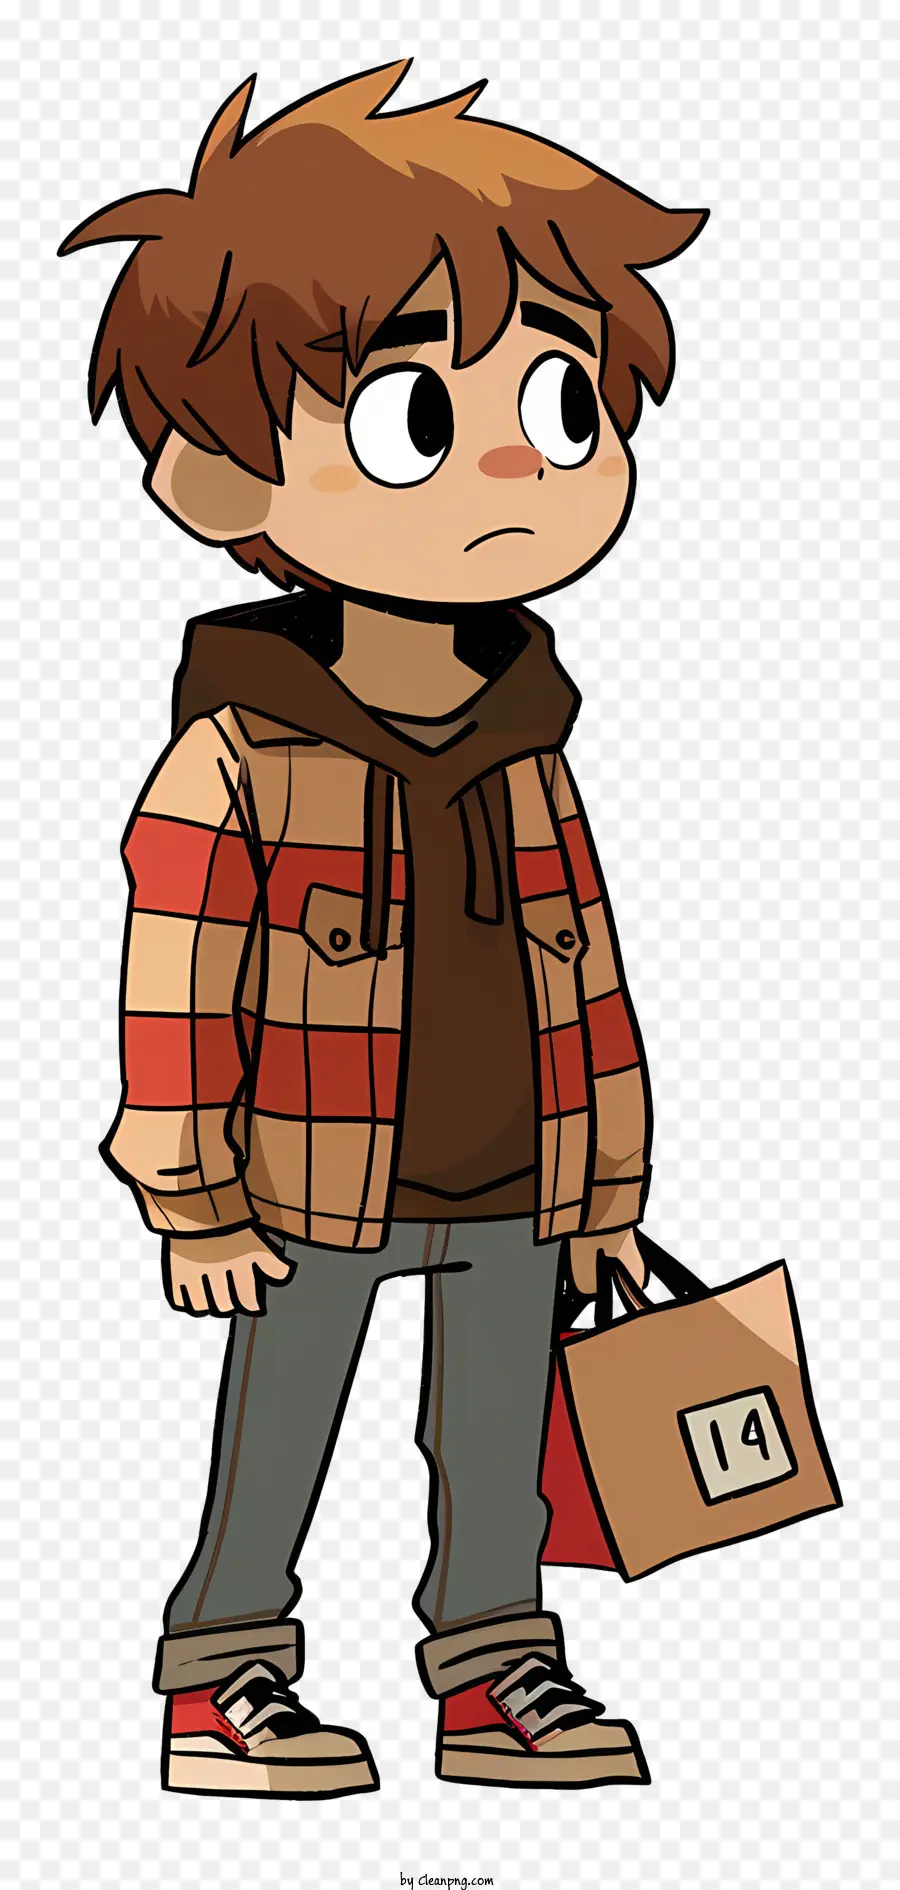 Scott Pilgrim hoạt hình cậu bé áo khoác màu nâu áo màu đỏ quần màu xám - Cậu bé hoạt hình mặc áo khoác màu nâu với hộp